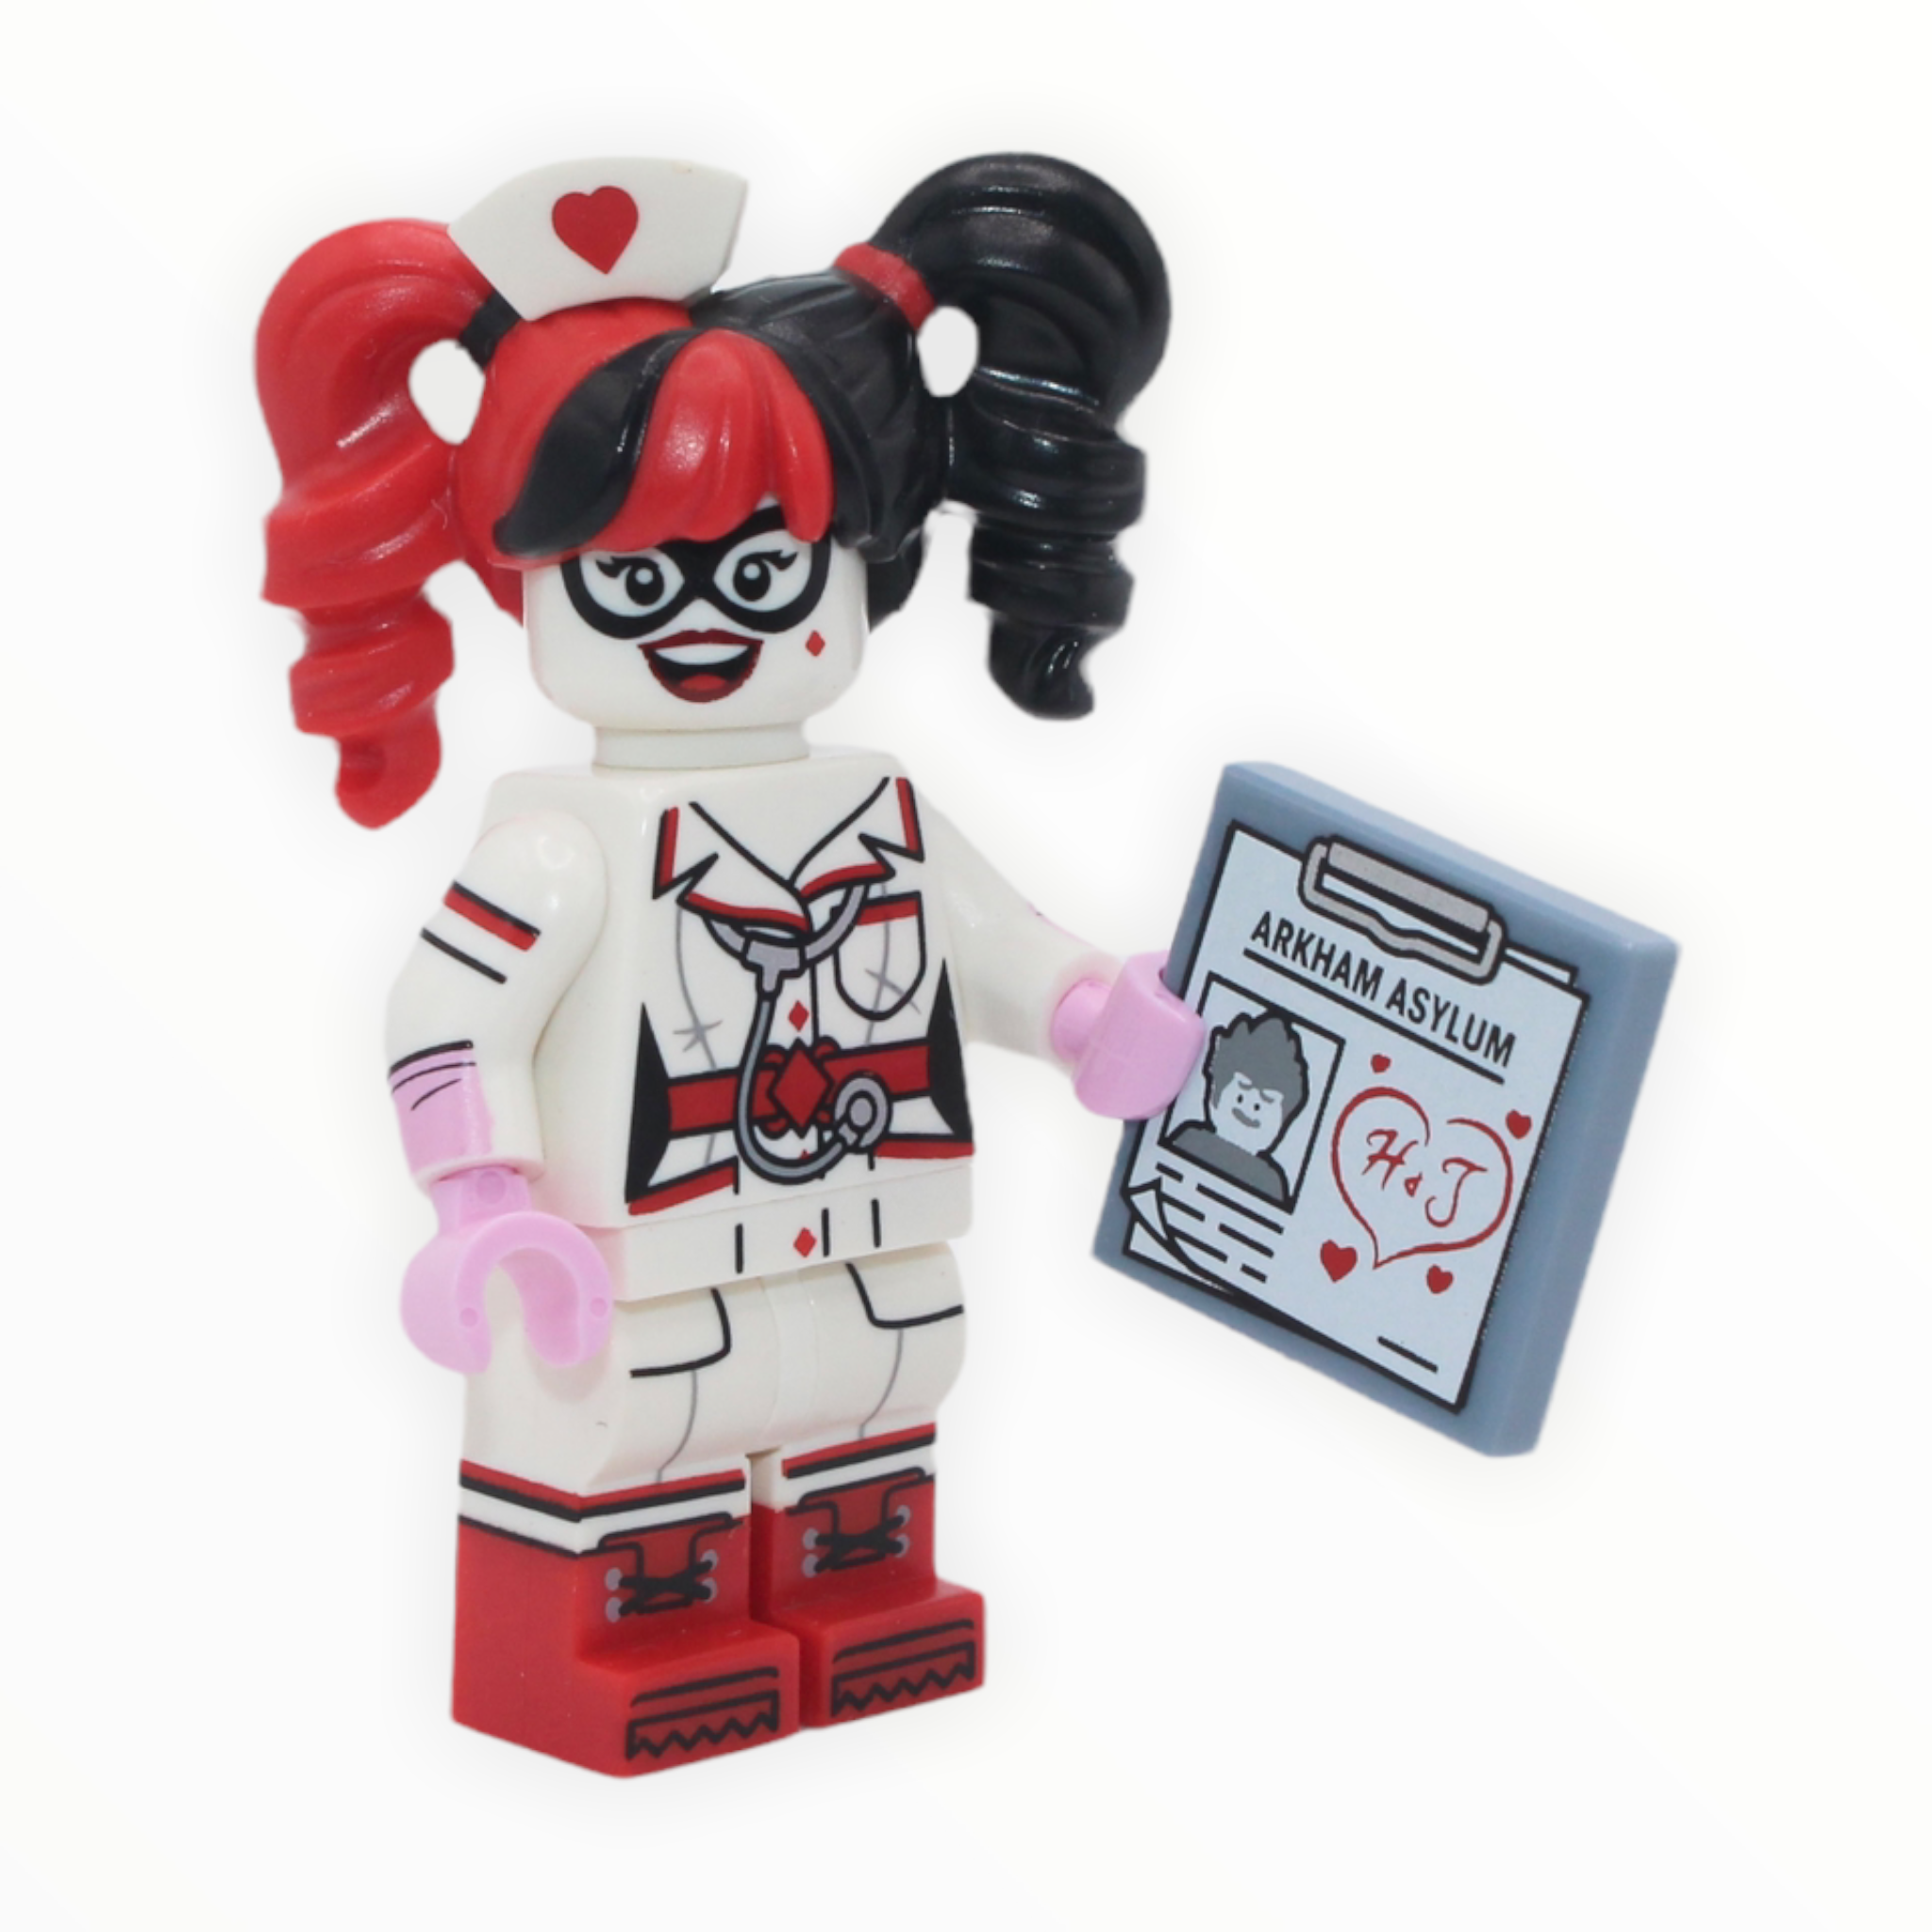 The LEGO Batman Movie Series 1: Nurse Harley Quinn